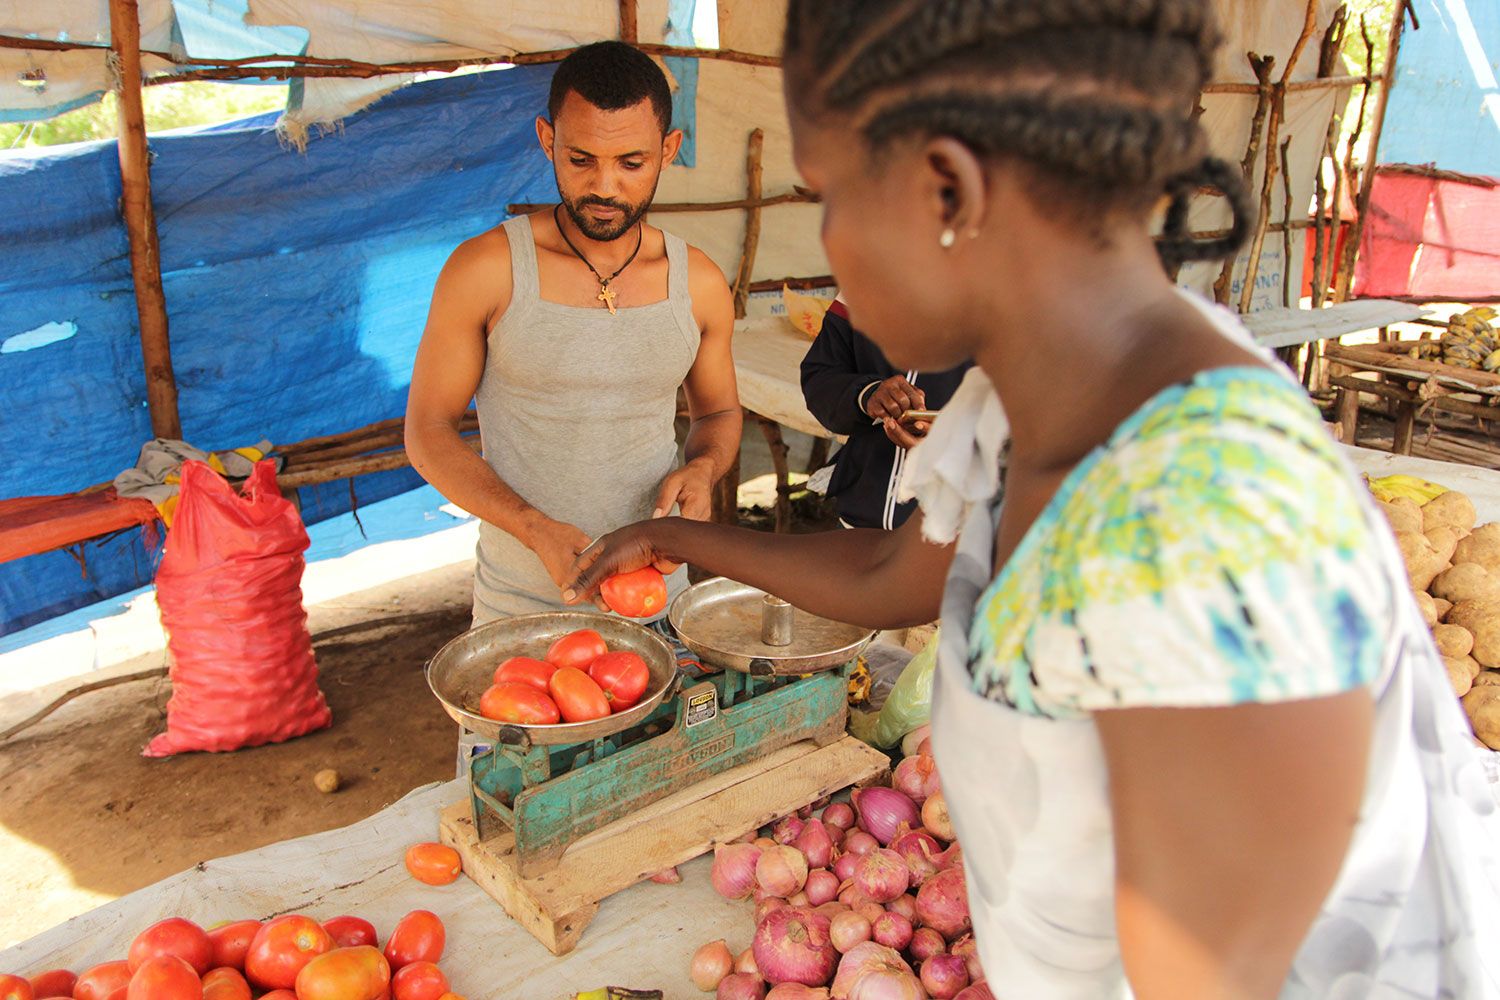 Nyajuok køber ind på grøntsagsmarked i Kule-lejren